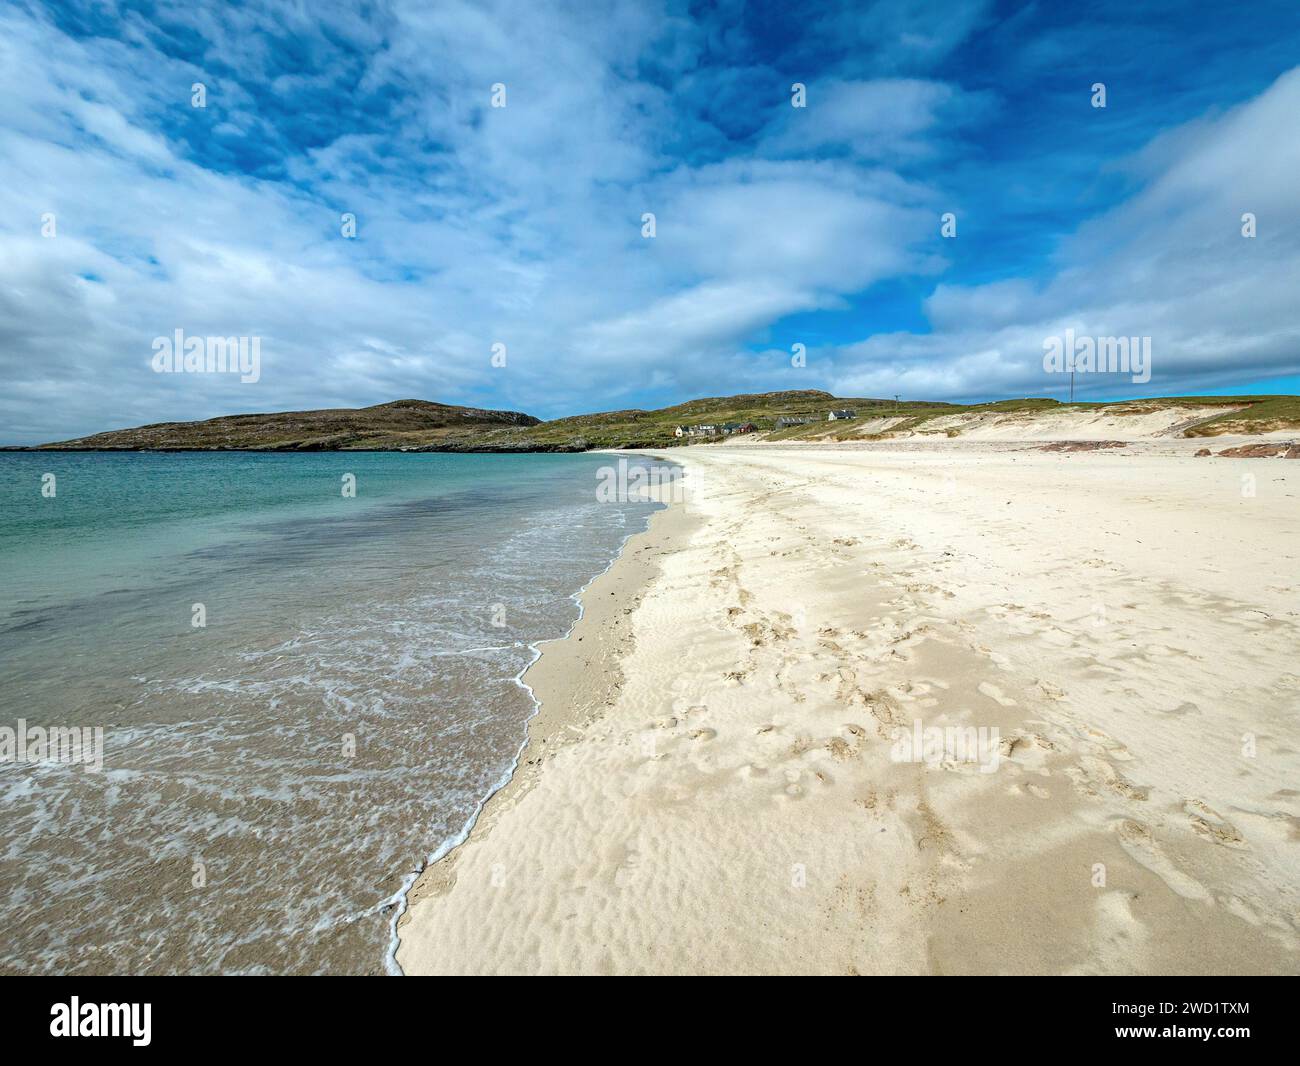 La splendida spiaggia sabbiosa deserta e remota di Huisinis (Hushinish), l'isola di Harris a maggio, le Ebridi esterne, la Scozia, il Regno Unito Foto Stock